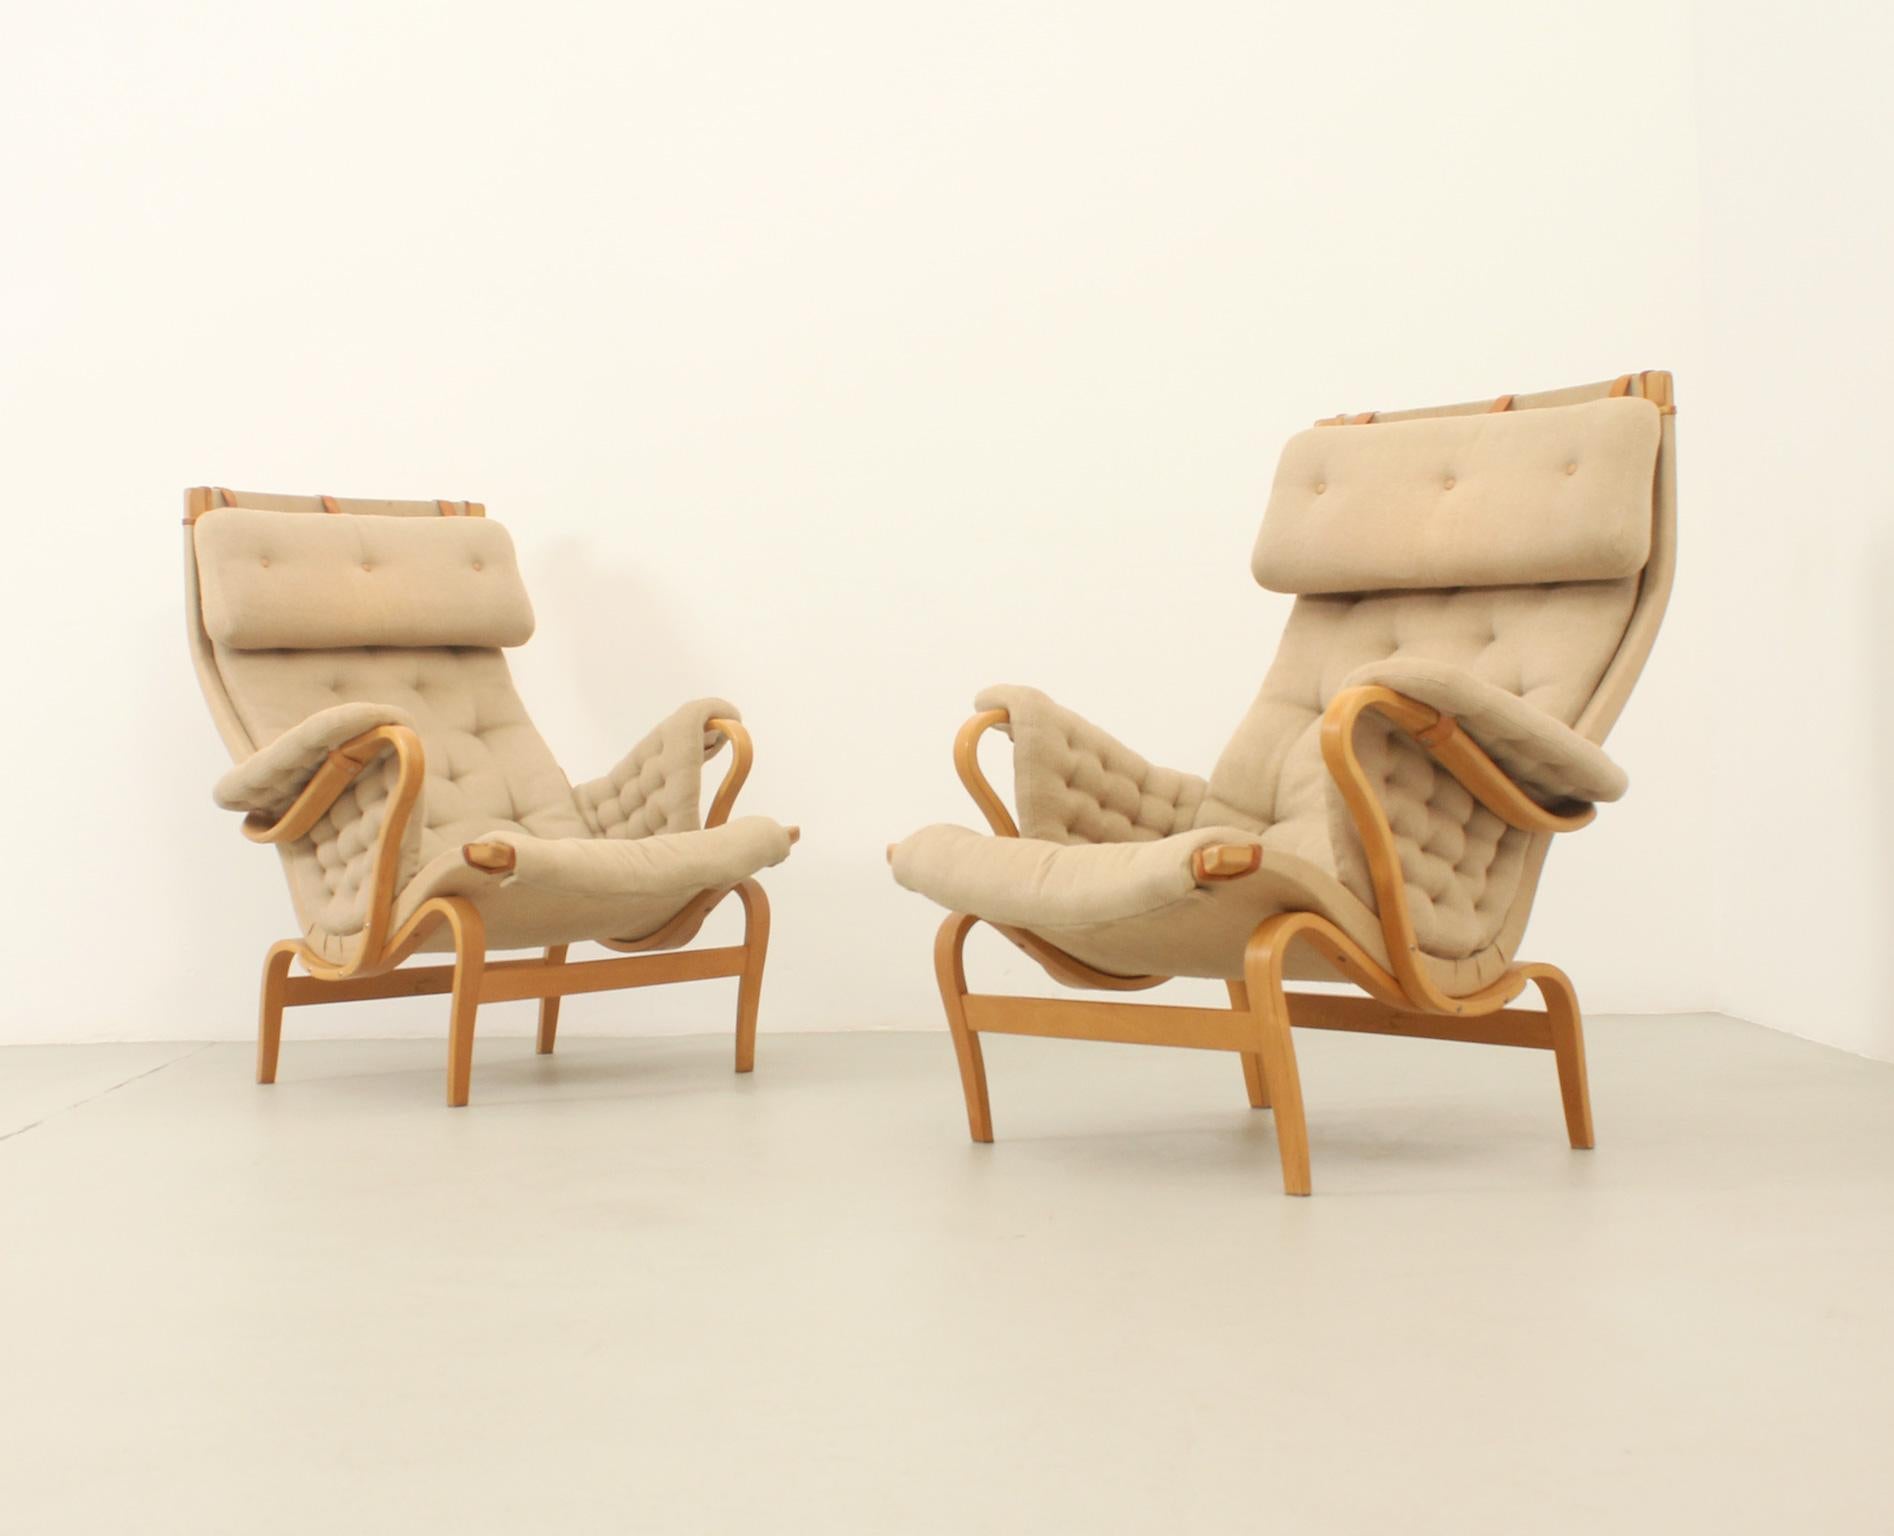 Paire de fauteuils Pernilla conçus en 1969 par Bruno Mathsson pour Dux, Suède. Structure courbe en bois de Beeche avec toile, bandes de cuir et tissu original. Signé. 